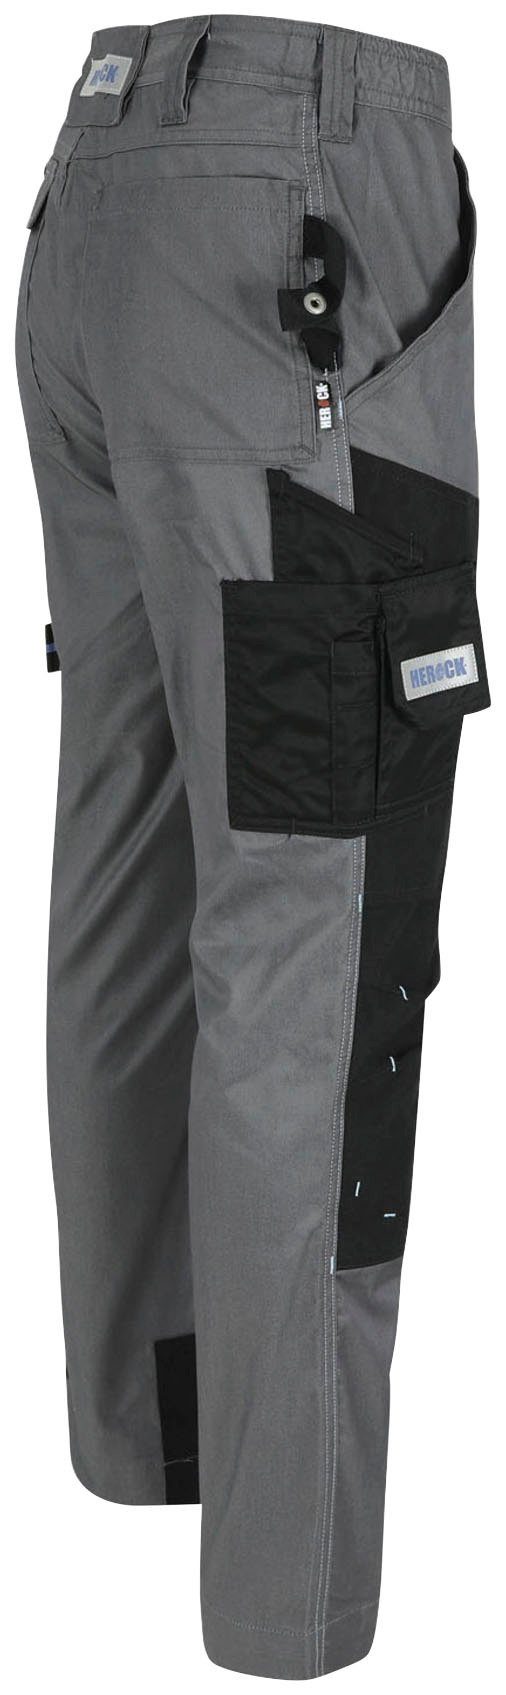 Herock Coolmax® Stretch, mit leicht Hose -Techn.; mehrere grau Viele Taschen, Arbeitshose Capua Farben